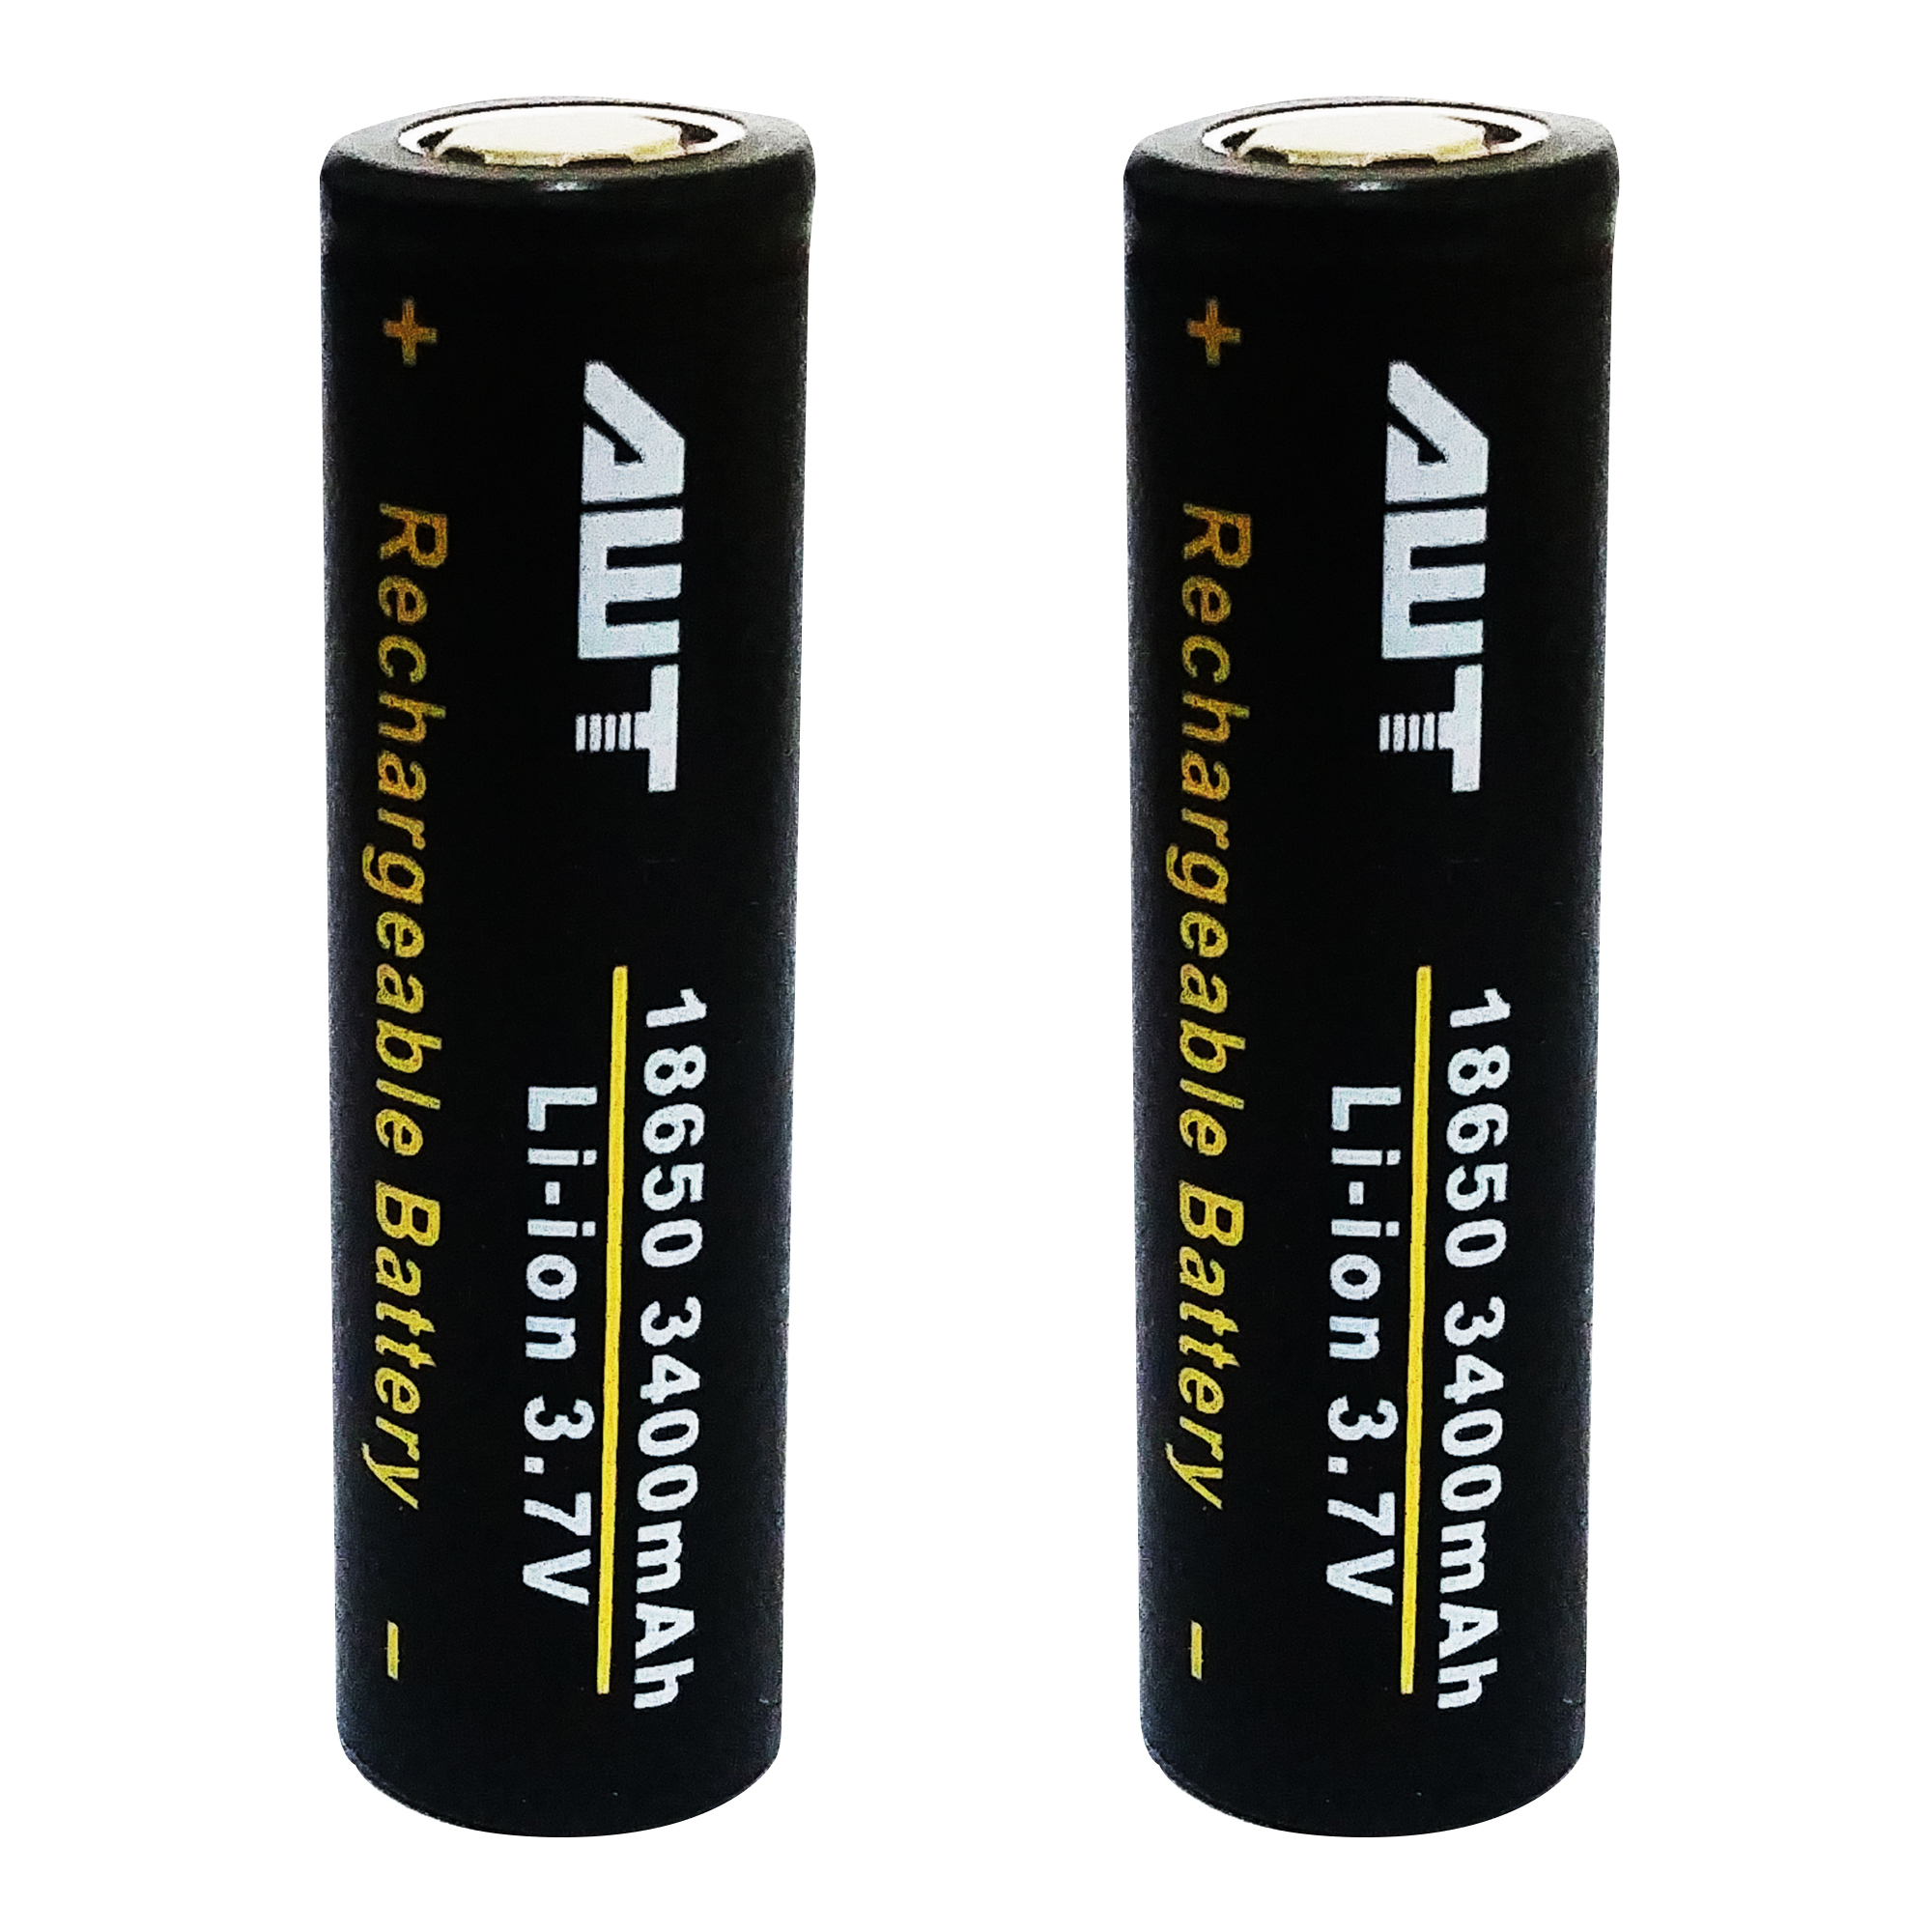 باتری لیتیوم یون قابل شارژ ای دبلیو تی کد 18650 ظرفیت 3400 میلی آمپرساعت بسته 2 عددی